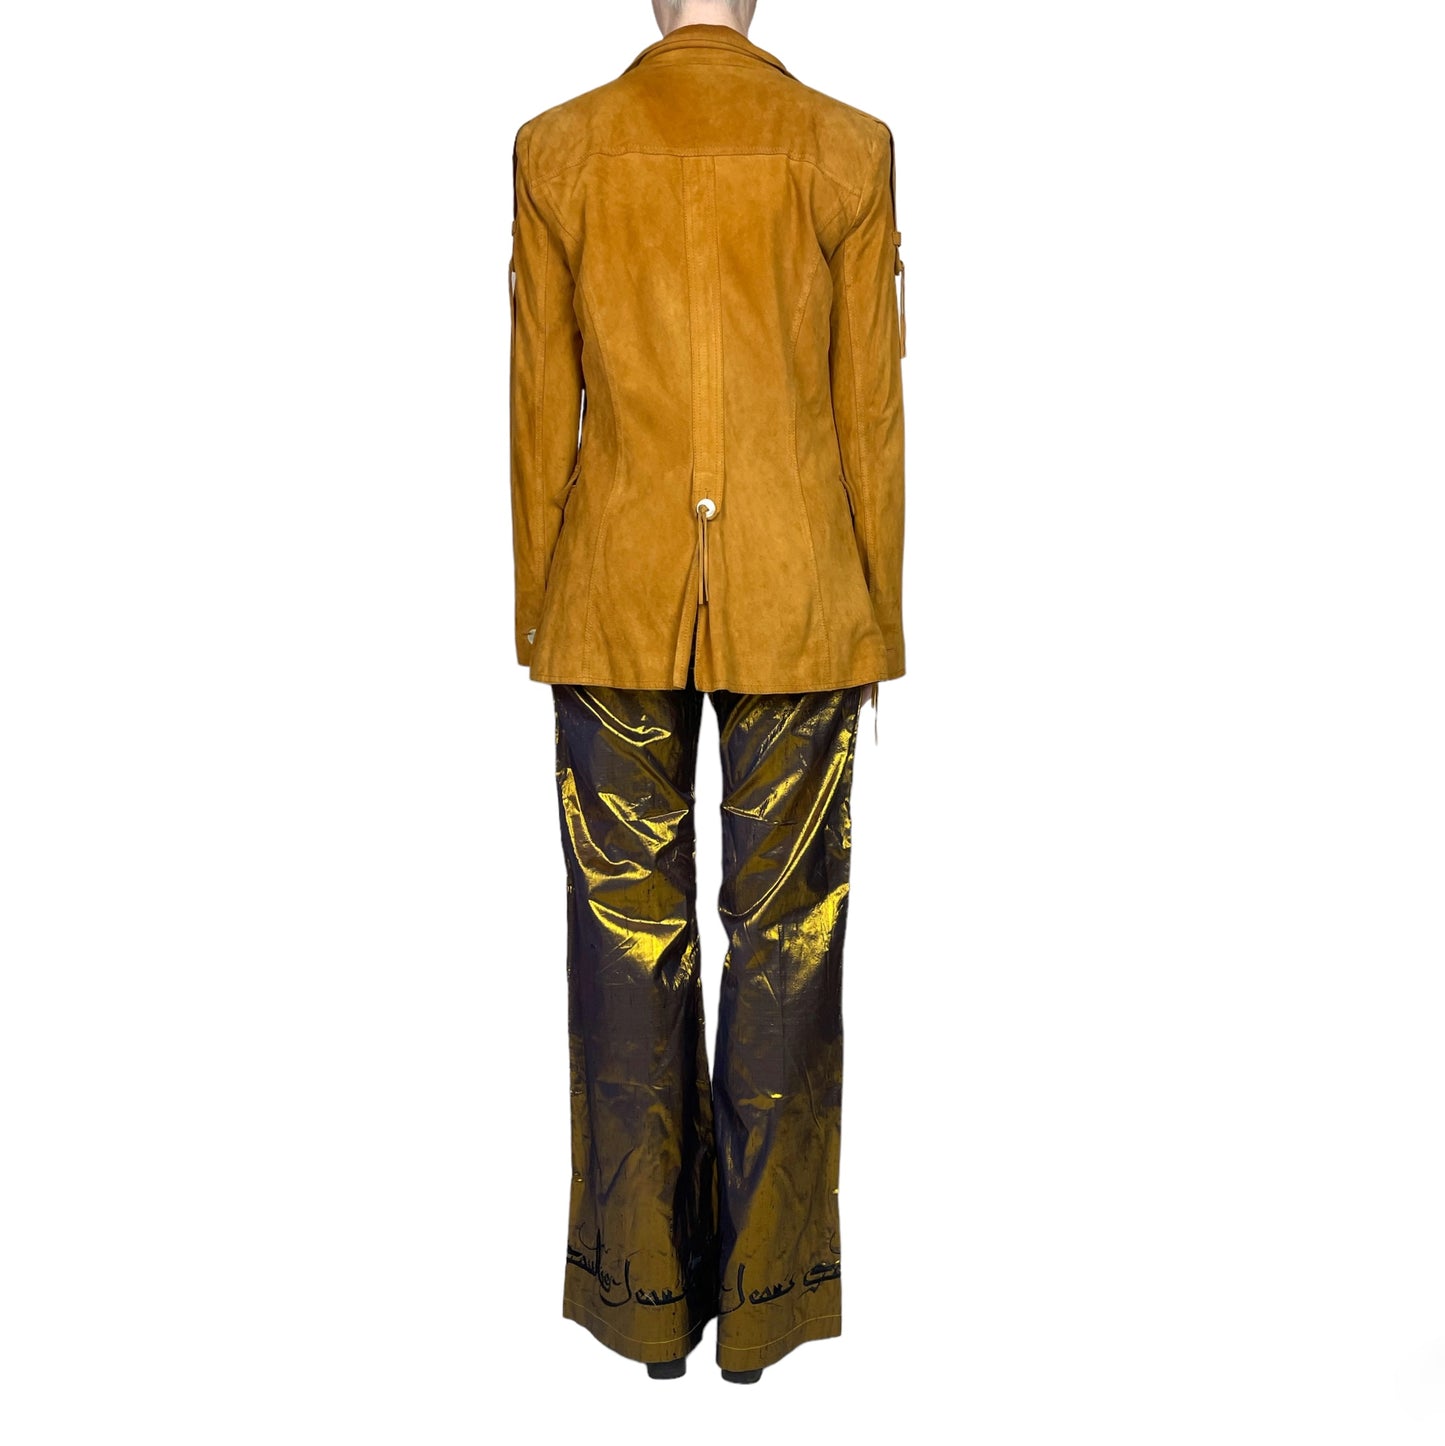 c.2001 Dolce & Gabbana suede jacket